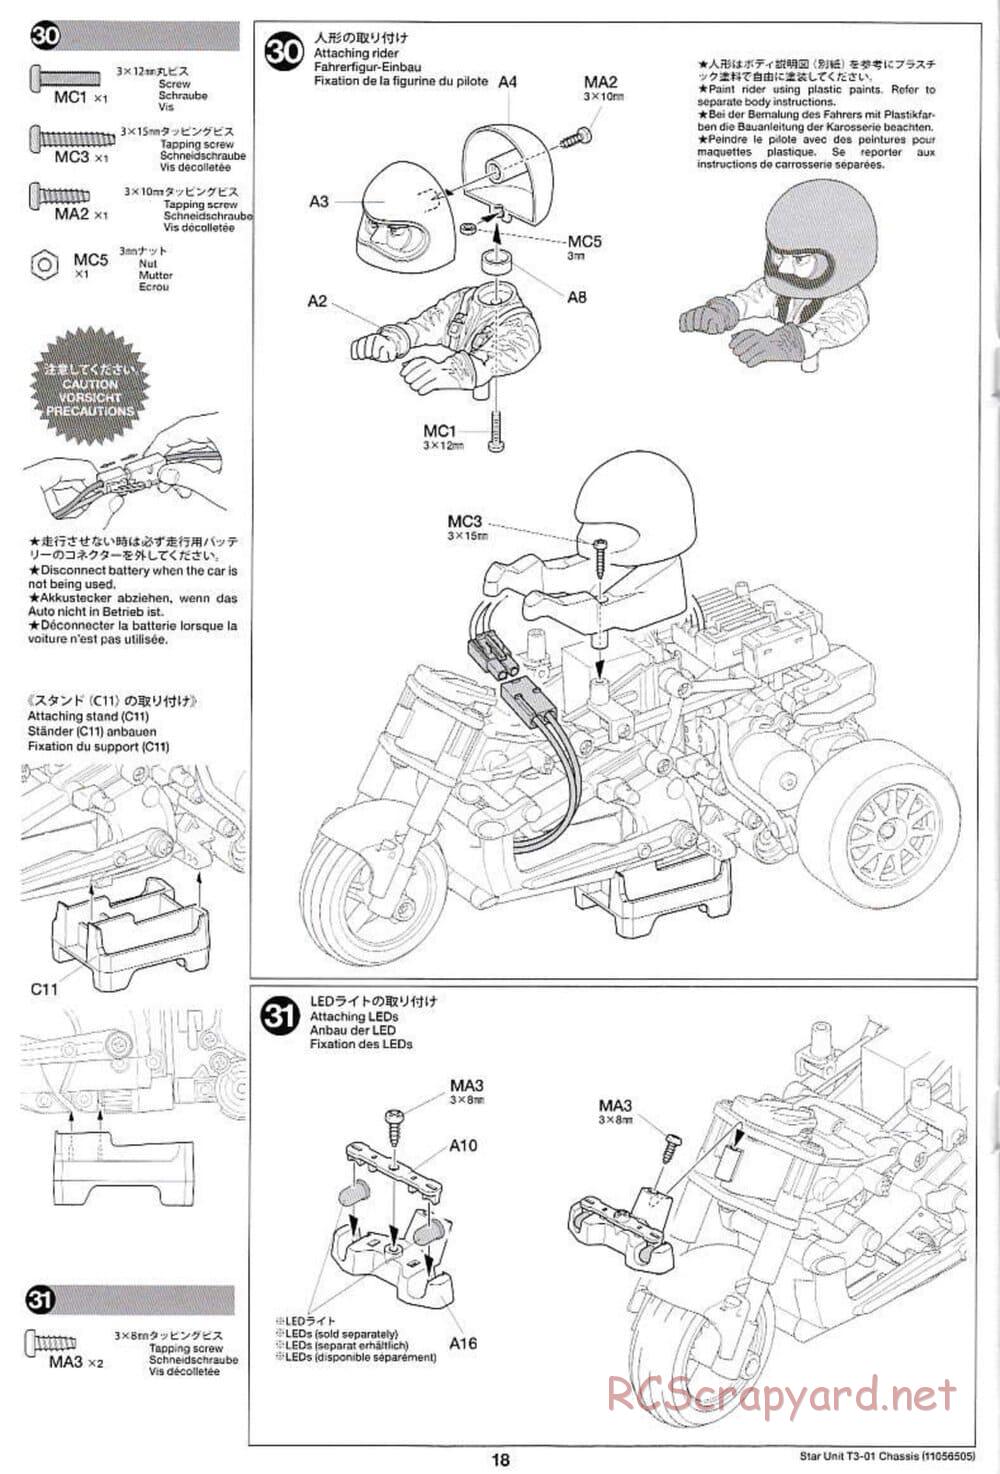 Tamiya - T3-01 Chassis - Manual - Page 18